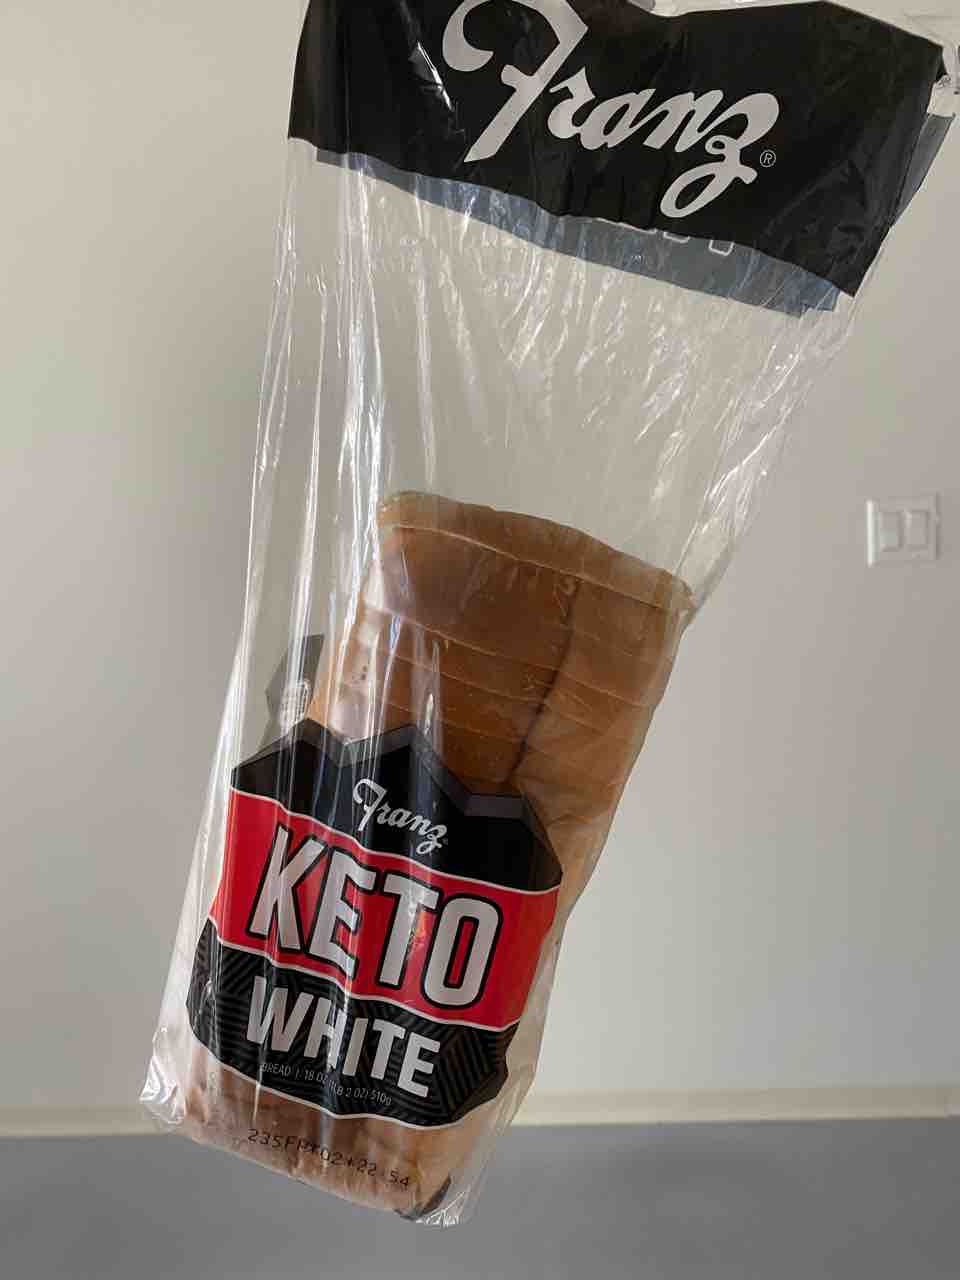 Franzのketoブレッド アメリカの超低カロリー高タンパクのパン ハワイネコ ブログ